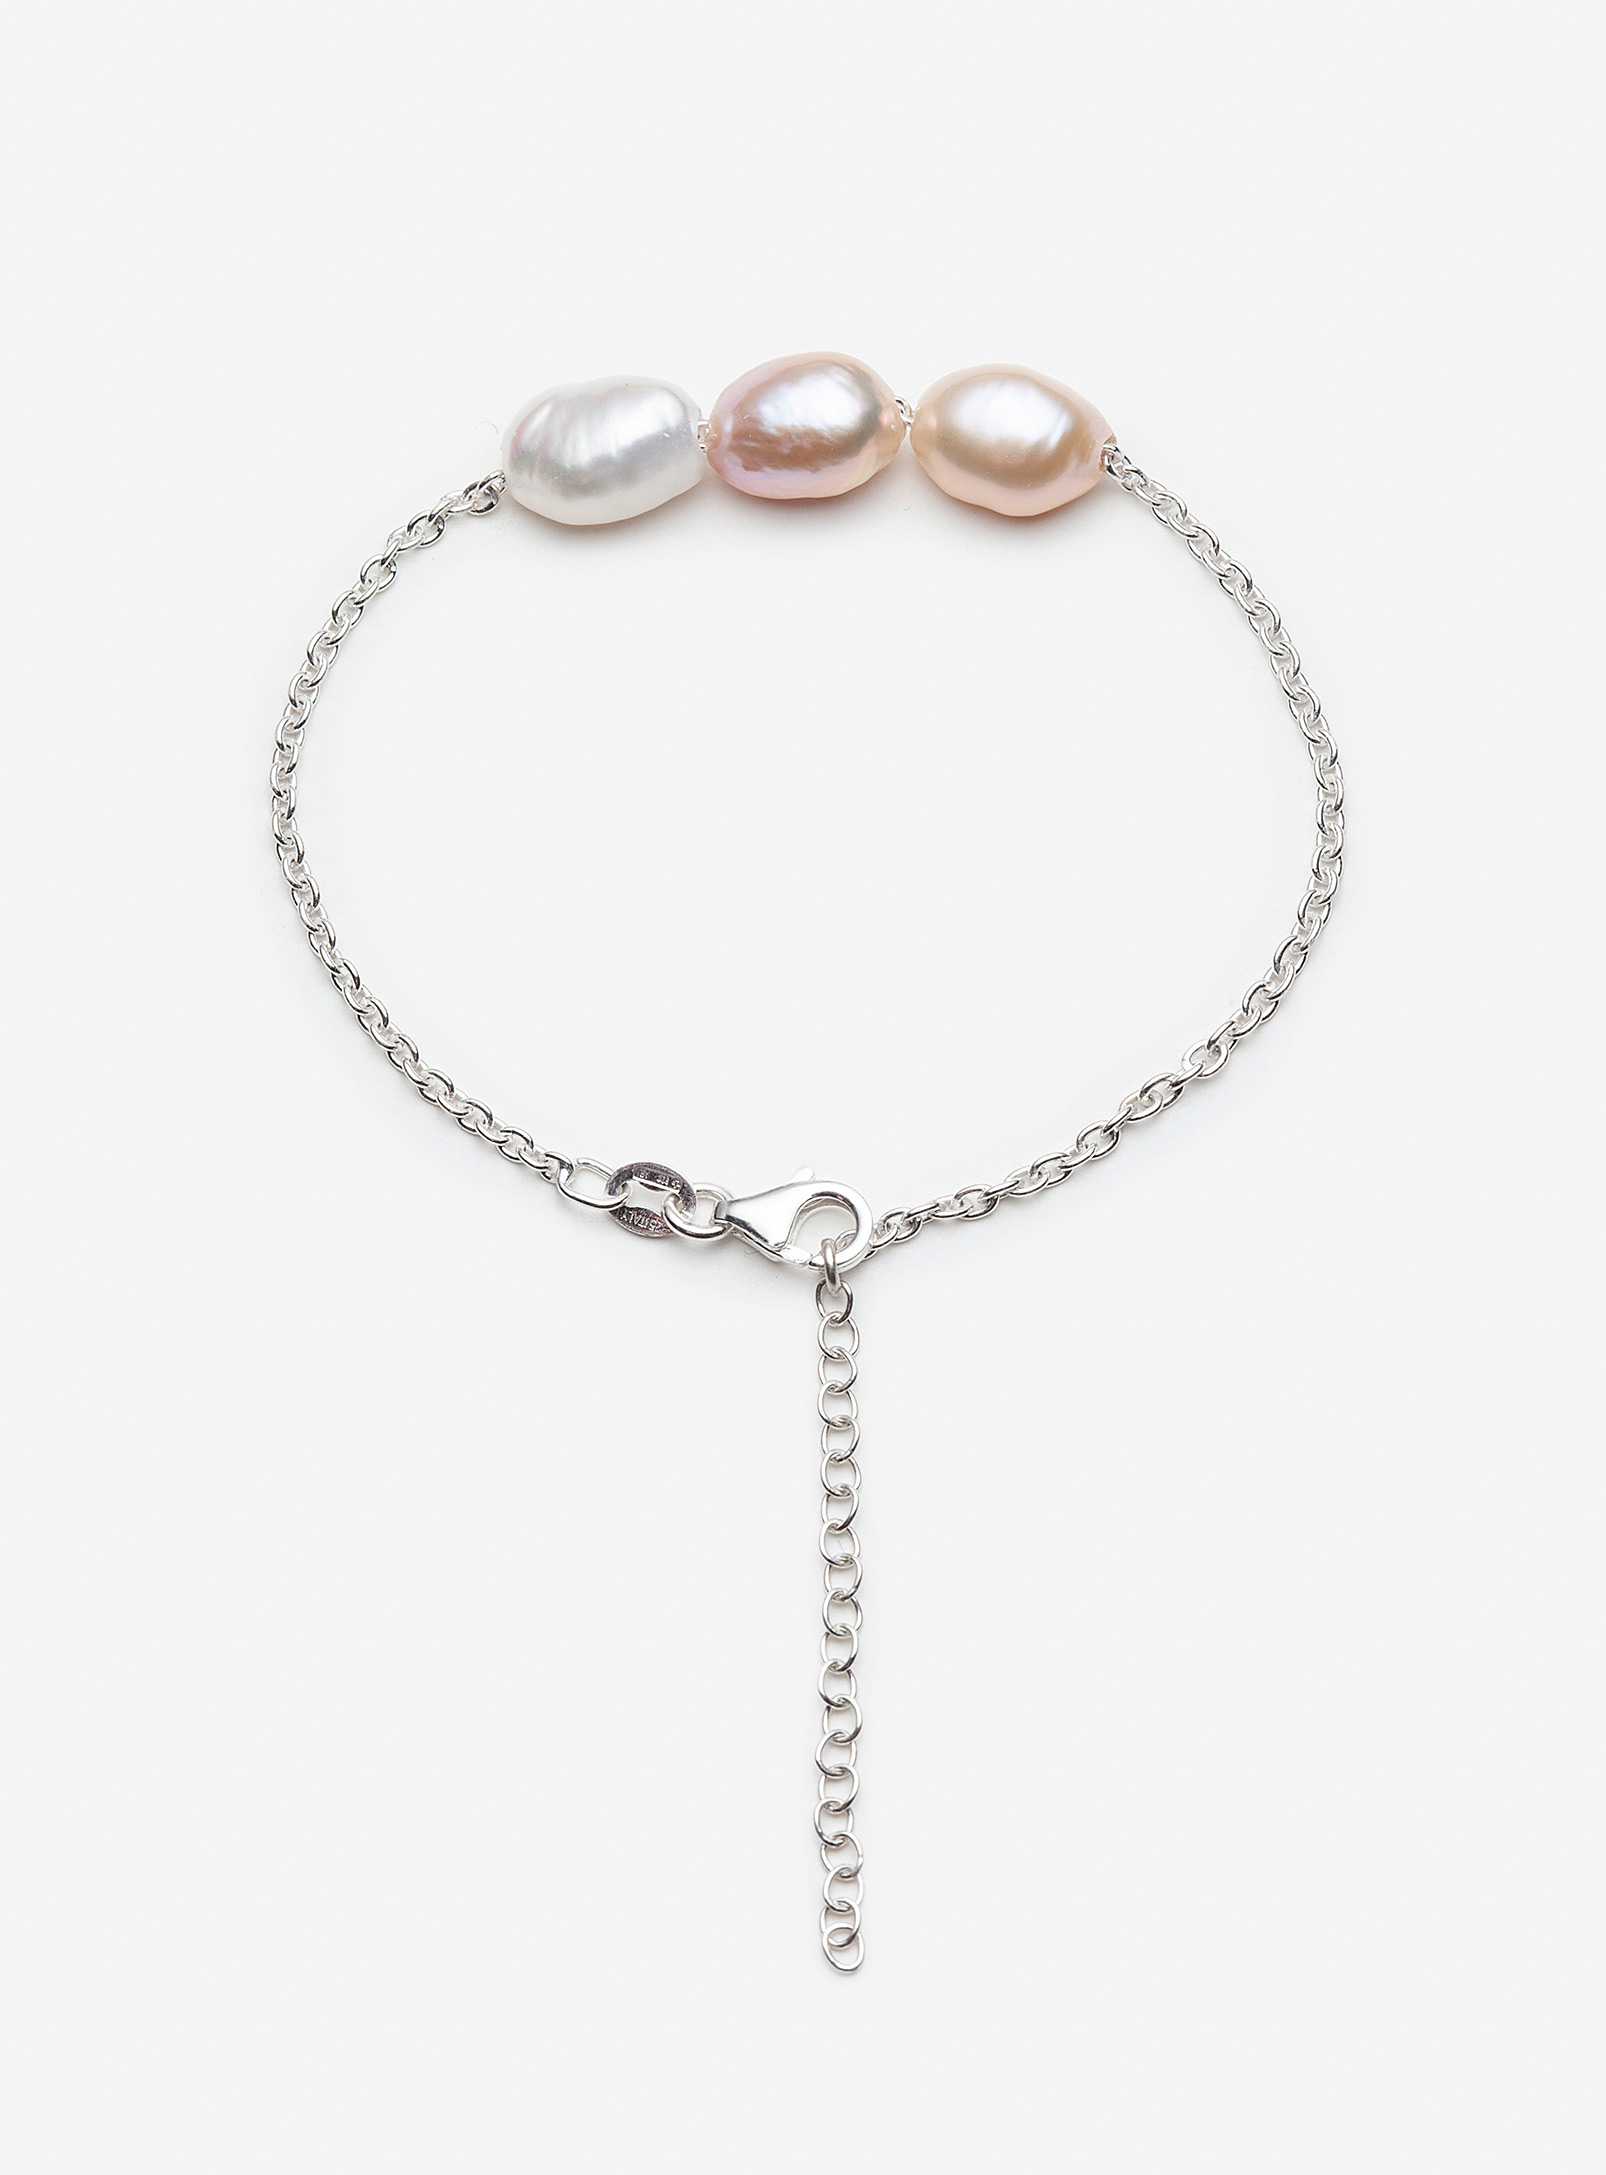 Pilar Agueci - Le bracelet de perles Ares